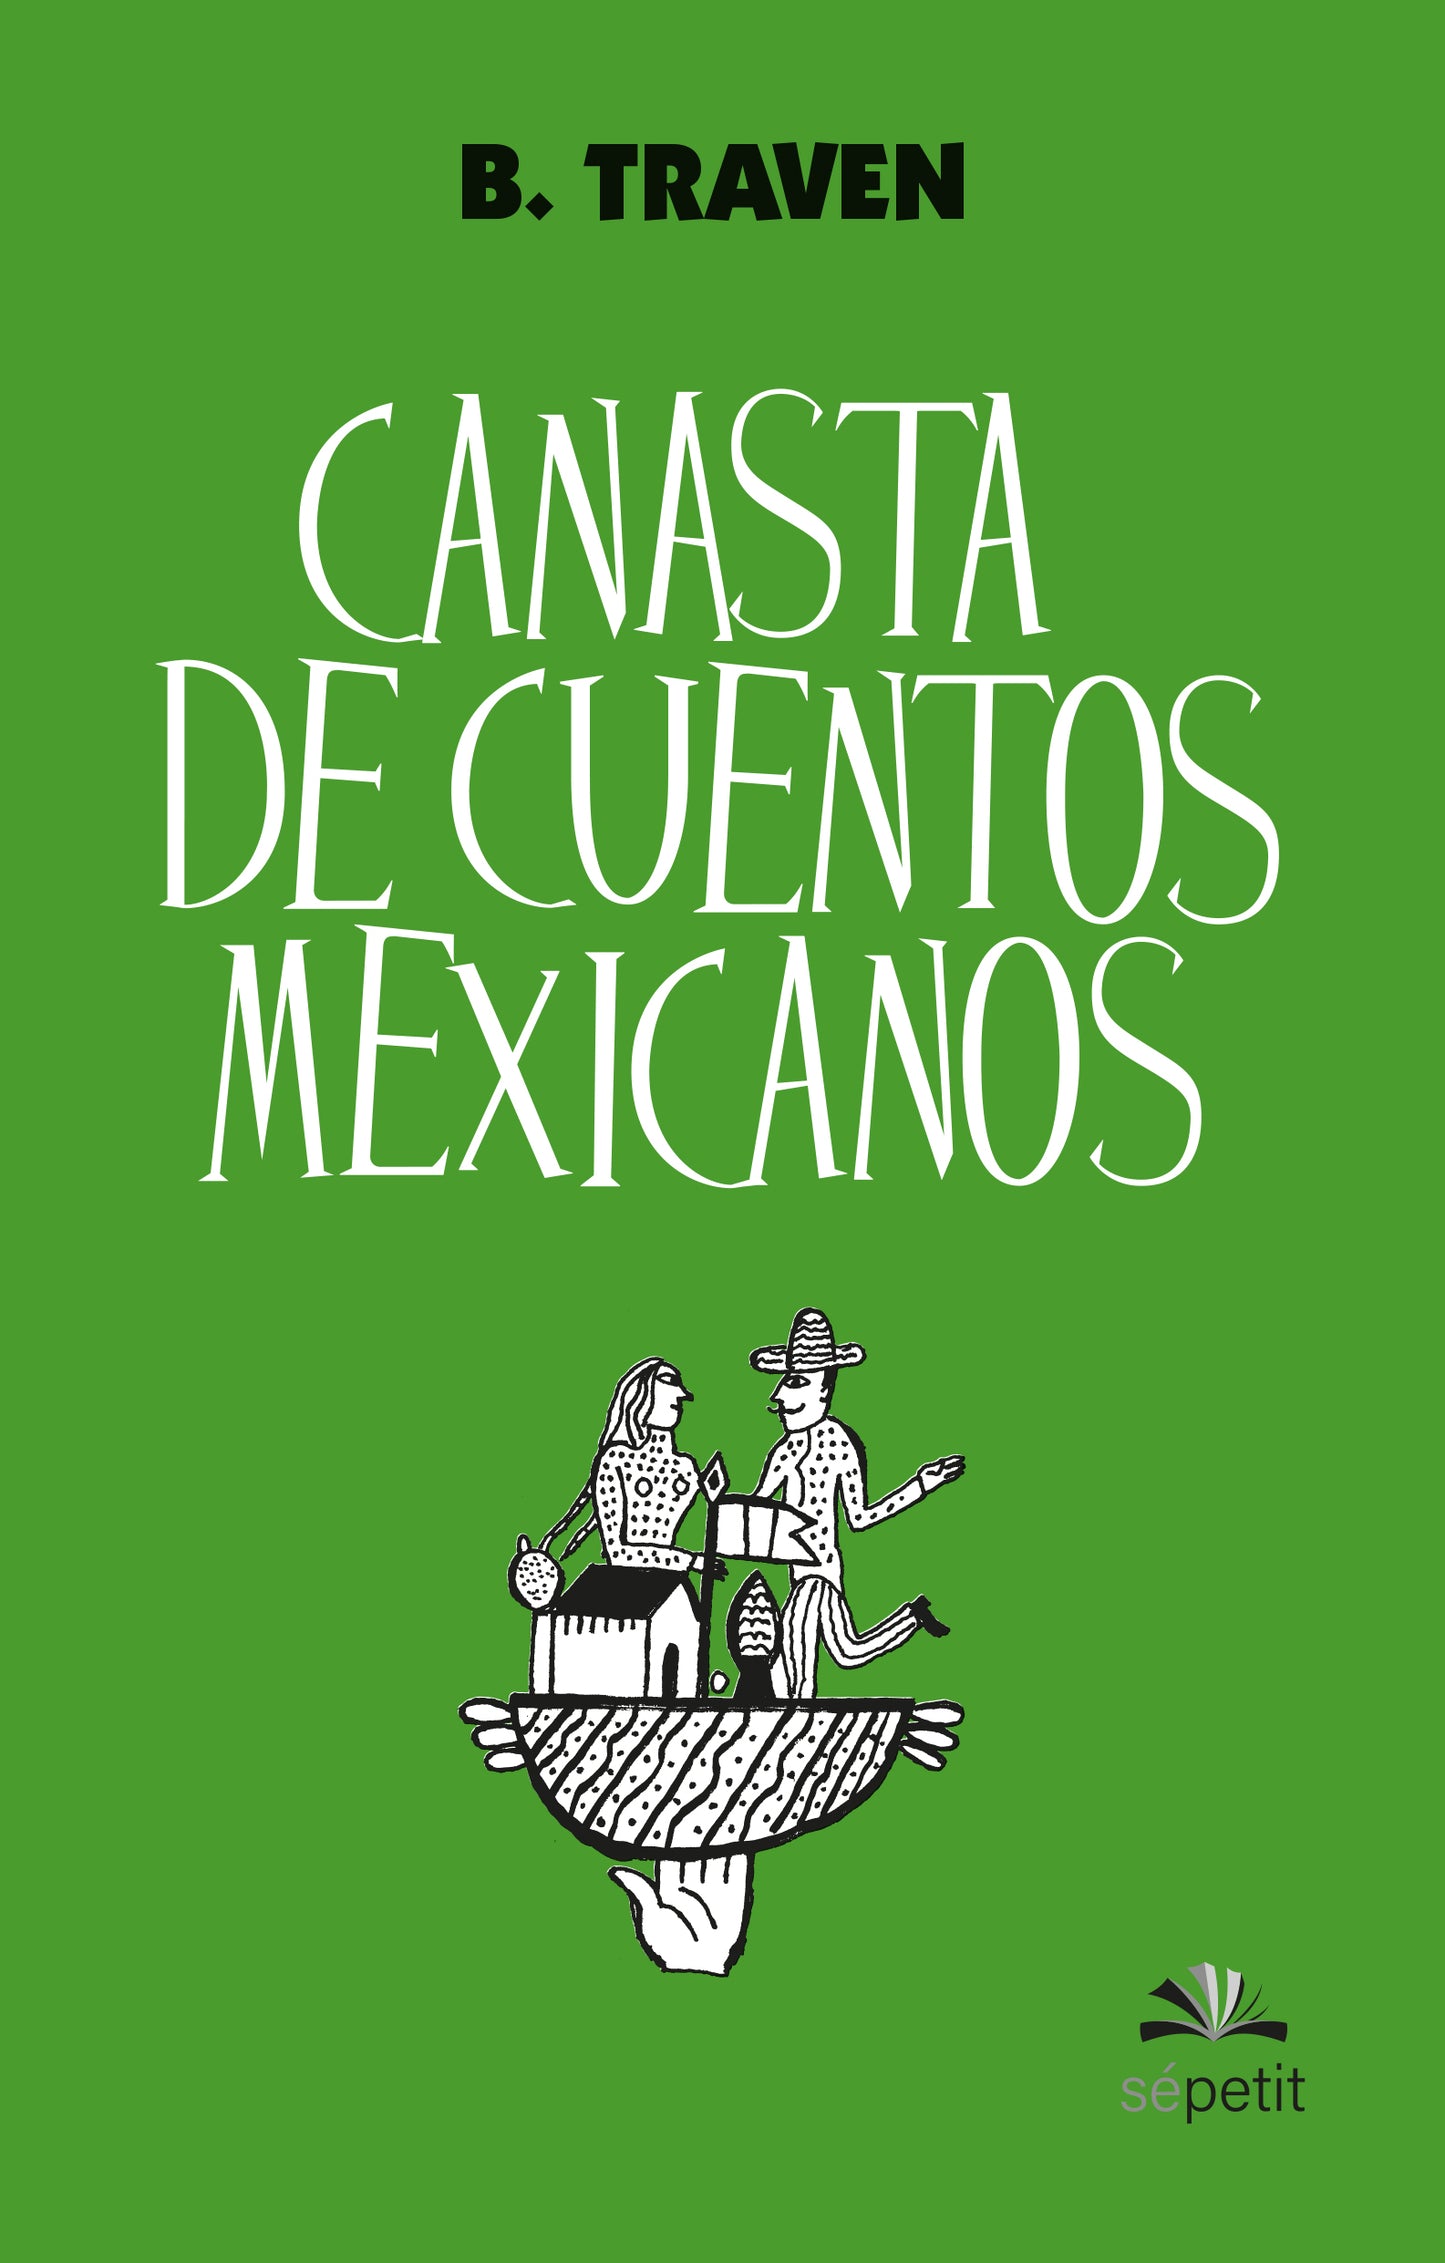 Canasta de cuentos mexicanos. Sépetite